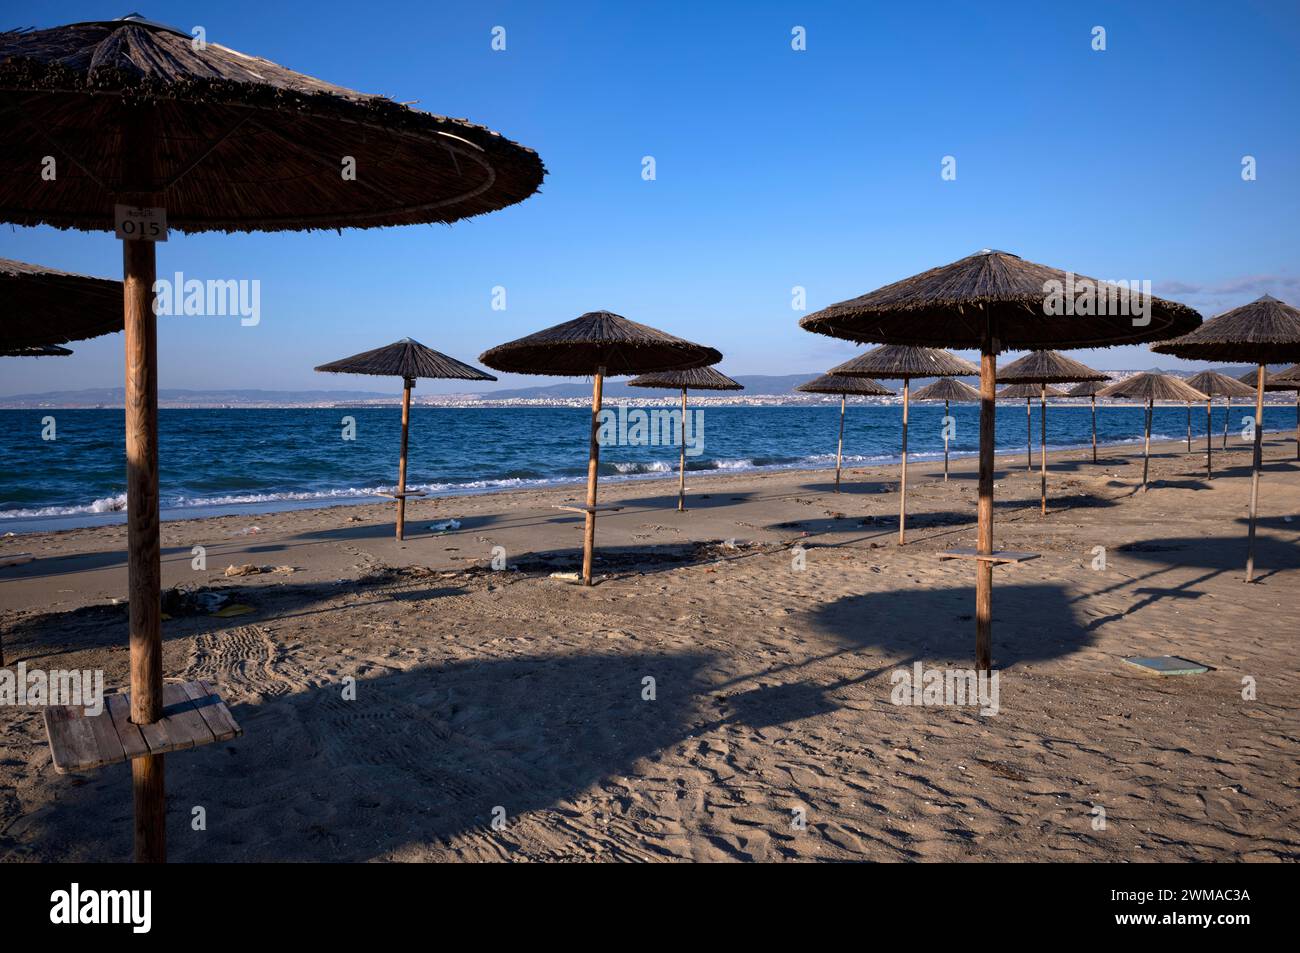 Ombrelloni, bar sulla spiaggia, vuoto, spiaggia, mare, Peraia, anche Perea, luce serale, Salonicco, Macedonia, Grecia Foto Stock